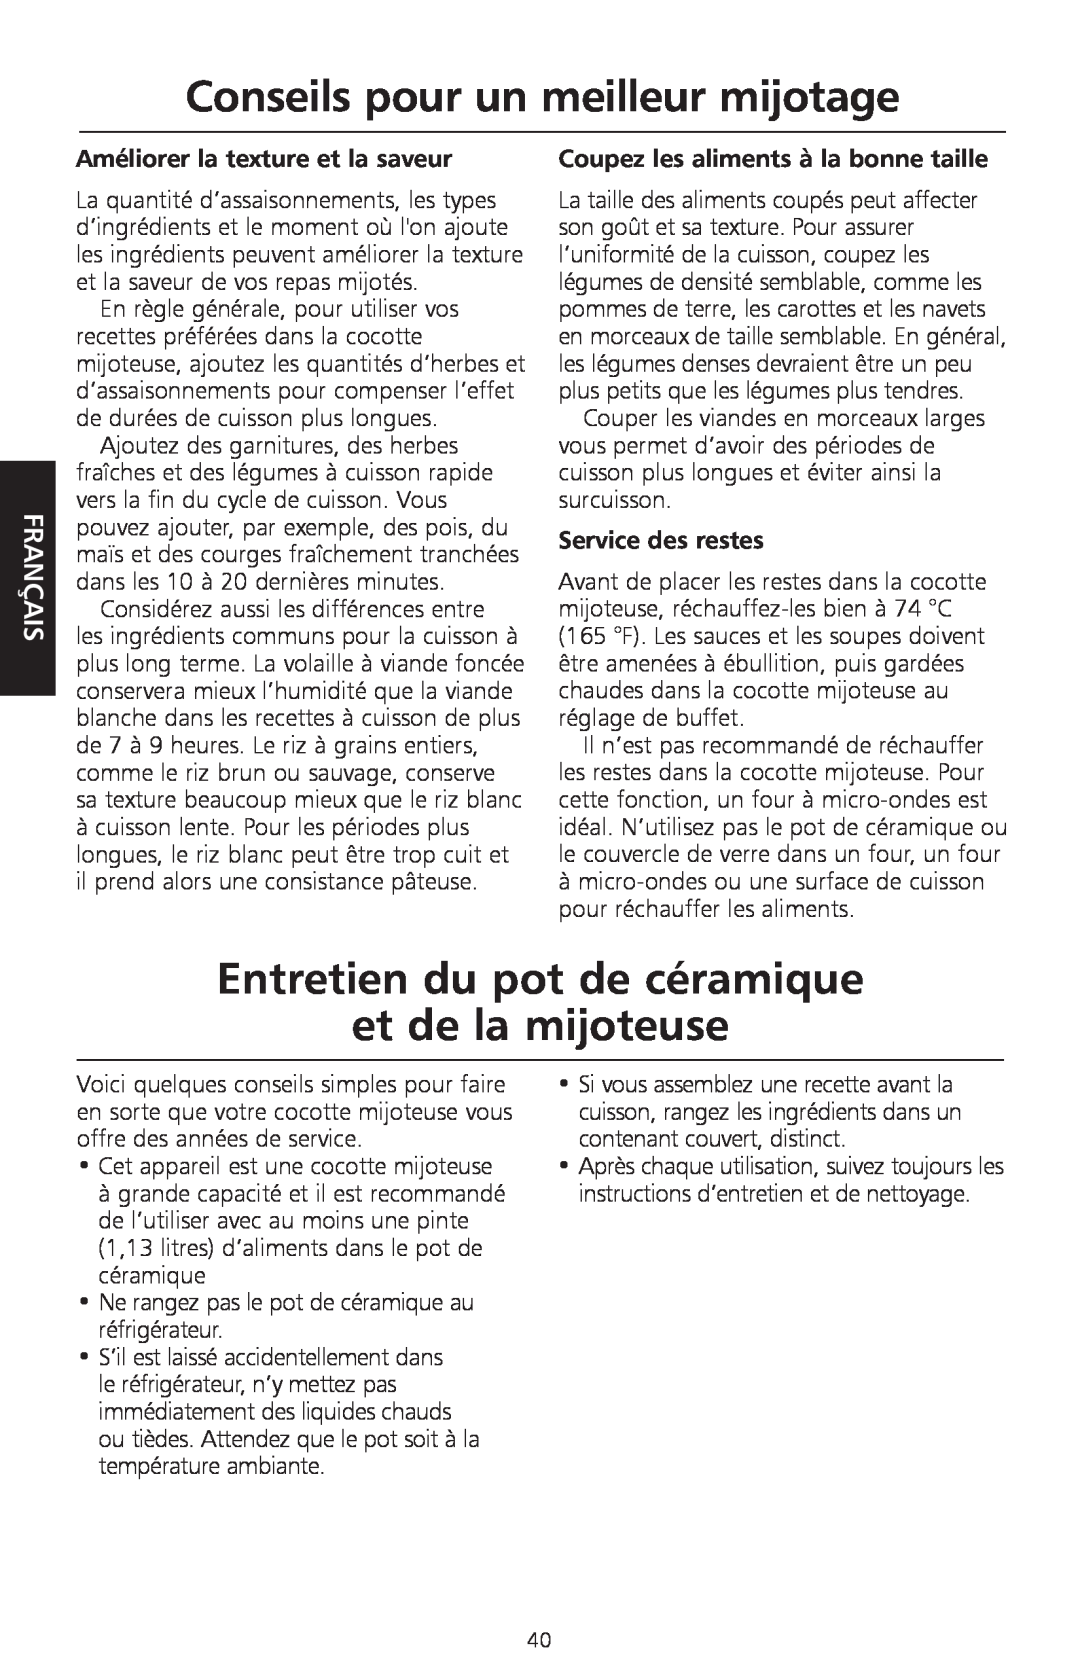 KitchenAid KSC700 manual Entretien du pot de céramique et de la mijoteuse, Conseils pour un meilleur mijotage, Français 